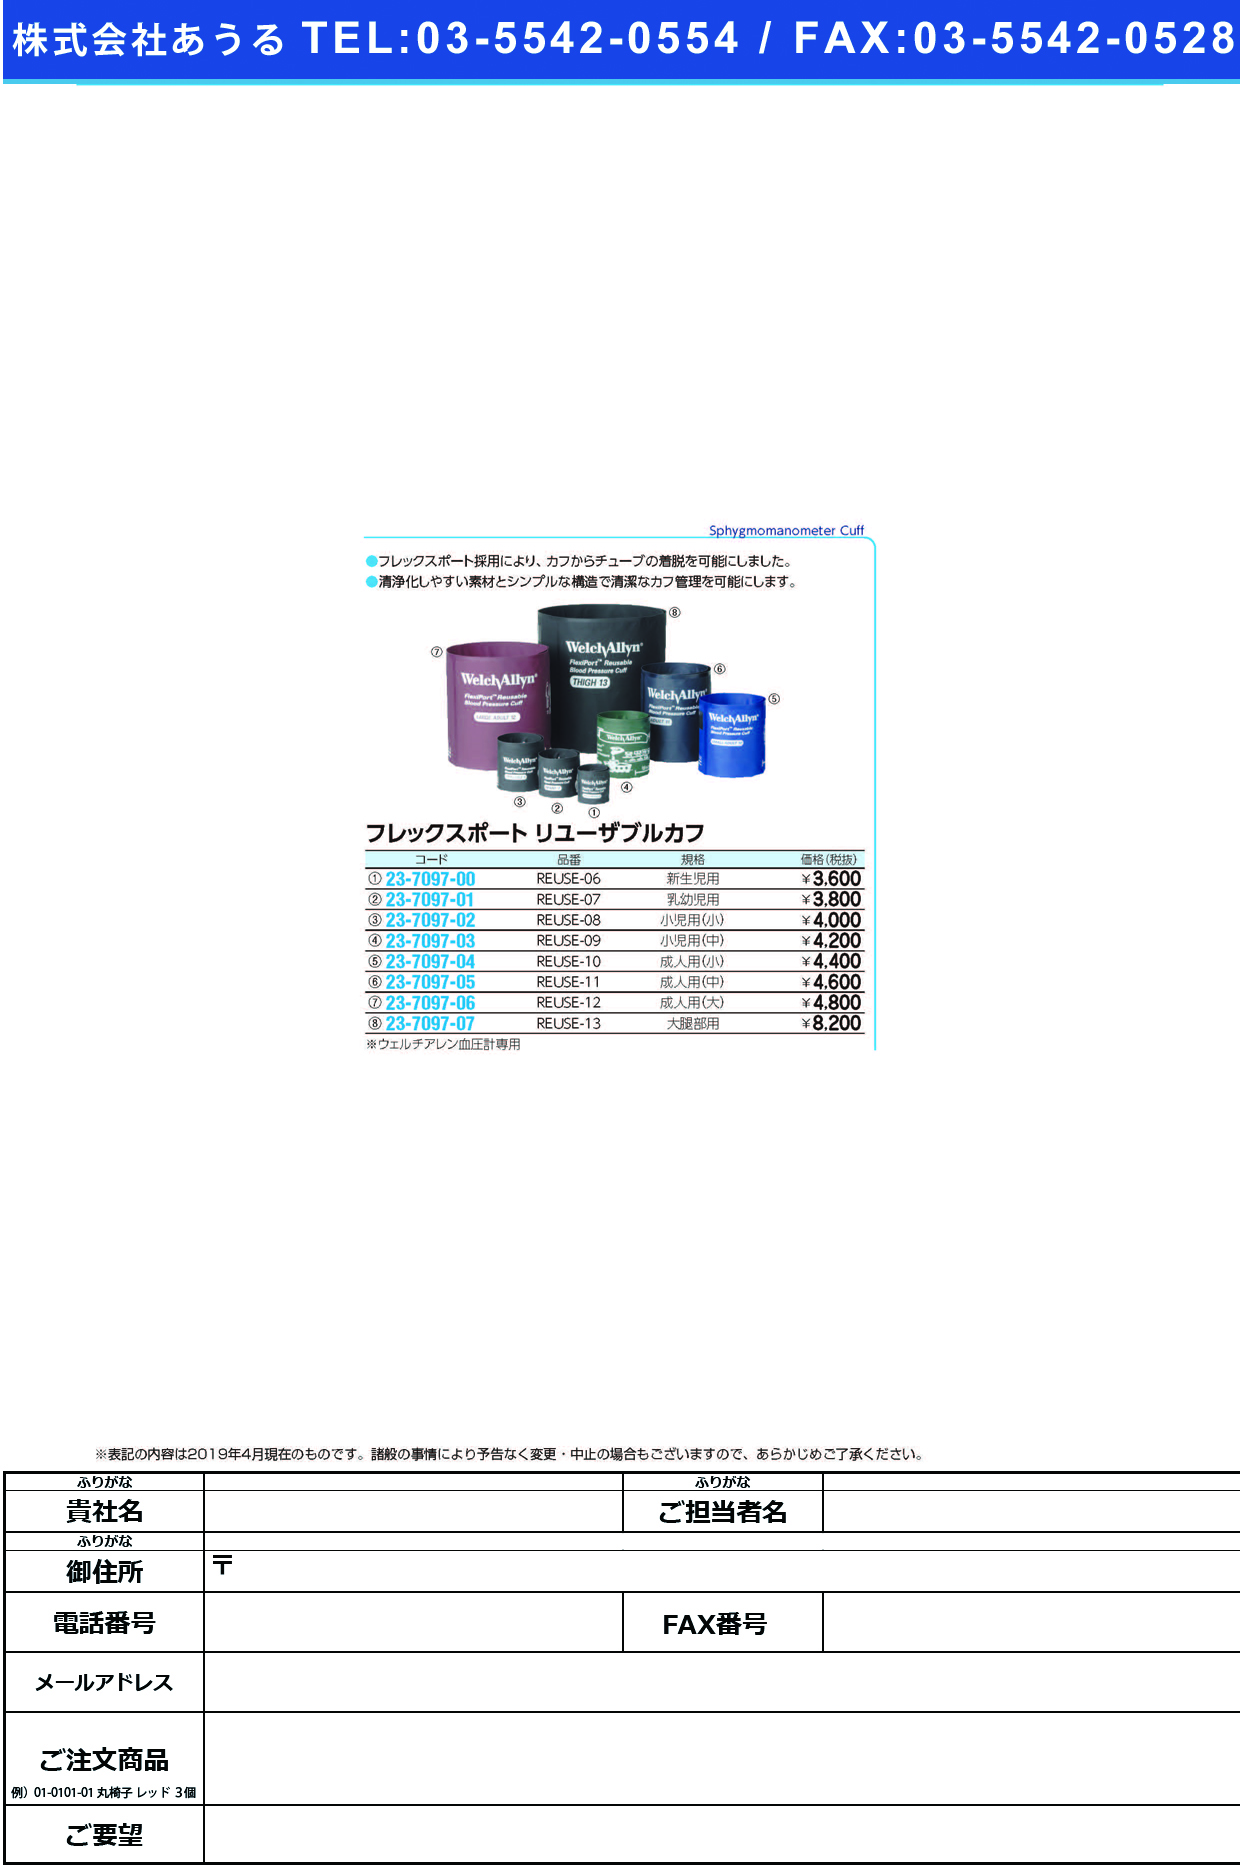 (23-7097-07)フレックスポートリユースカフ大腿部用 REUSE-13 ﾌﾚｯｸｽﾎﾟｰﾄｶﾌﾀﾞｲﾀｲﾌﾞﾖｳ【1枚単位】【2019年カタログ商品】